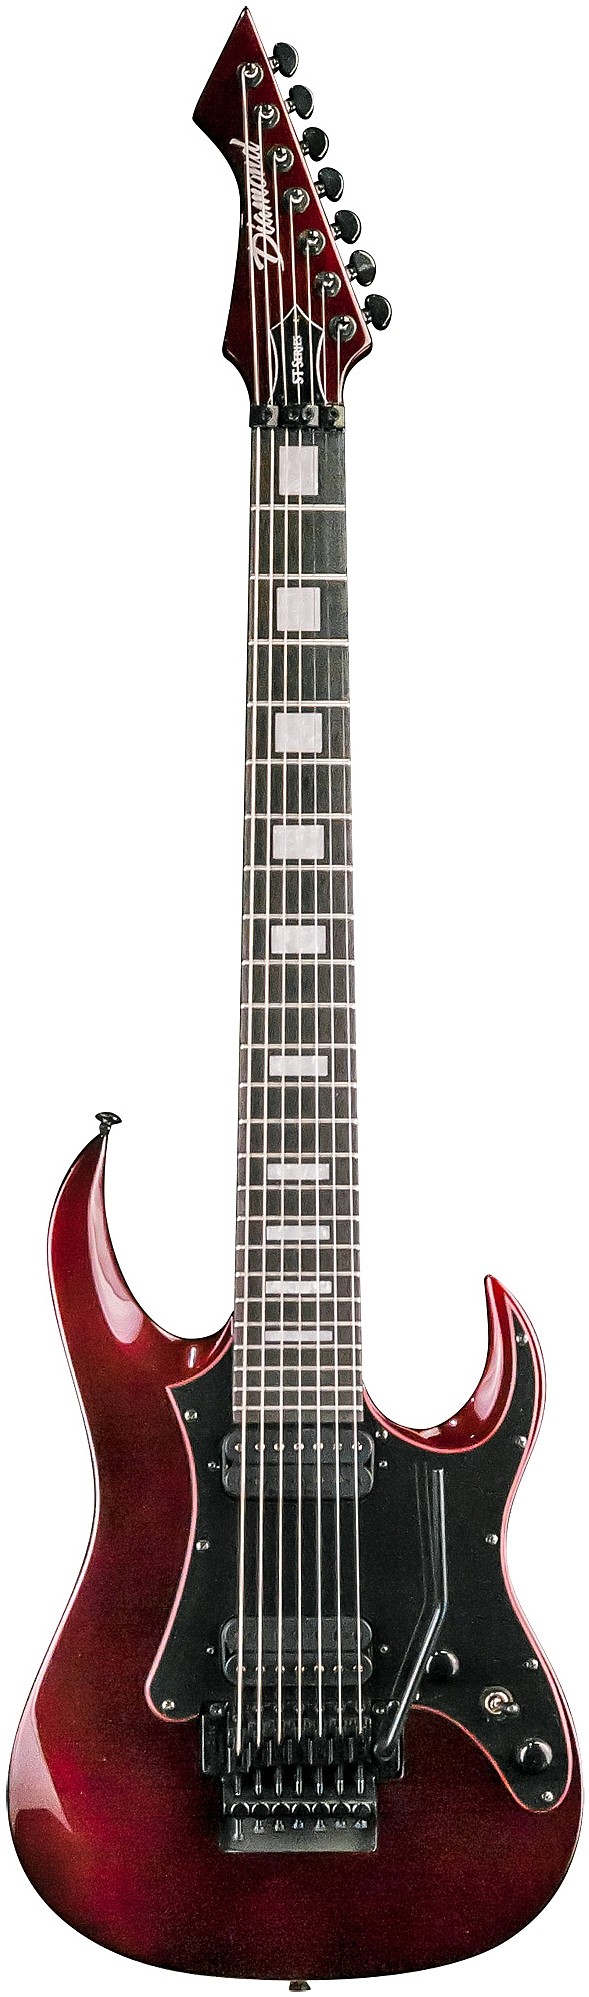 Halcyon ST 7 by DBZ Guitars